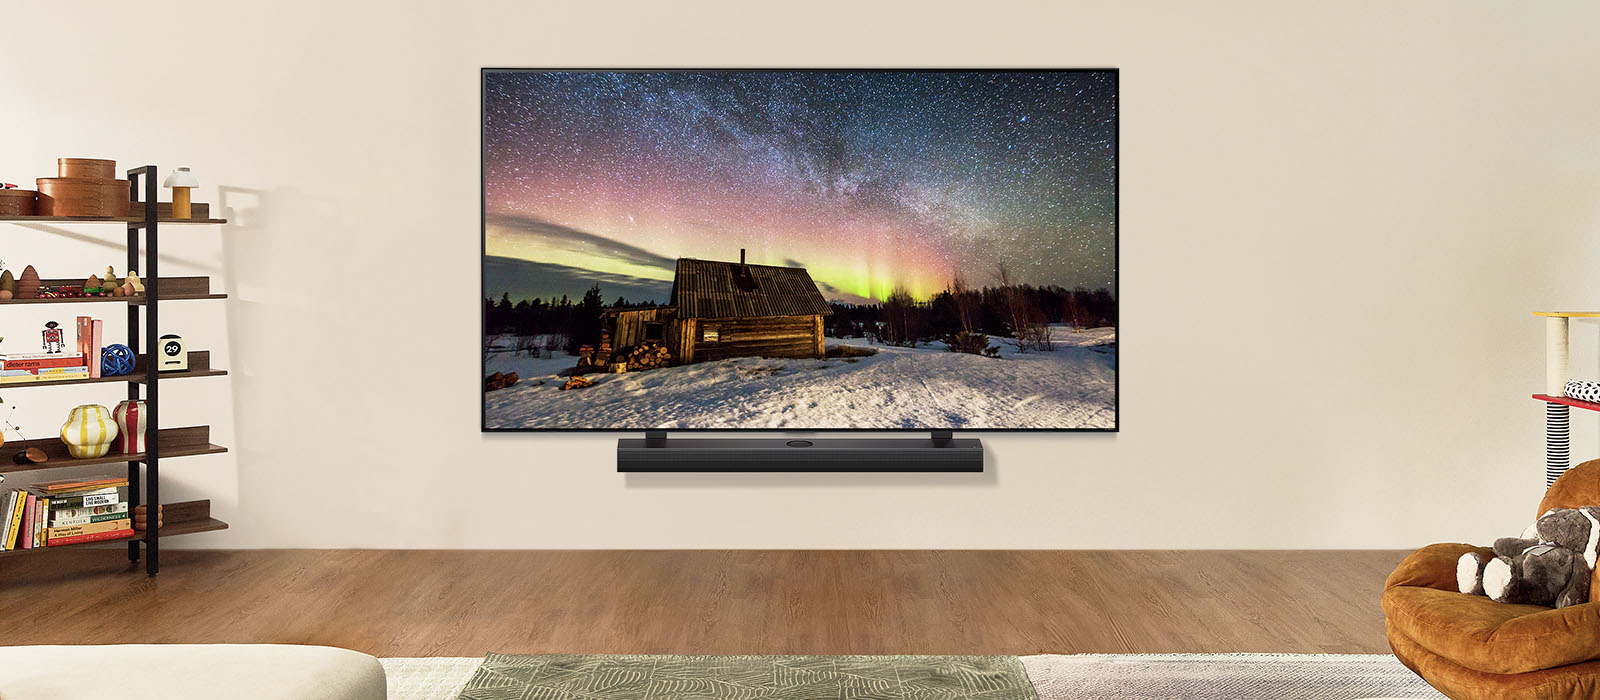 LG TV ja LG Soundbar ribakõlar päevasel ajal tänapäevases eluruumis. Virmaliste ekraanipilt kuvatakse ideaalsete heledustasemetega.